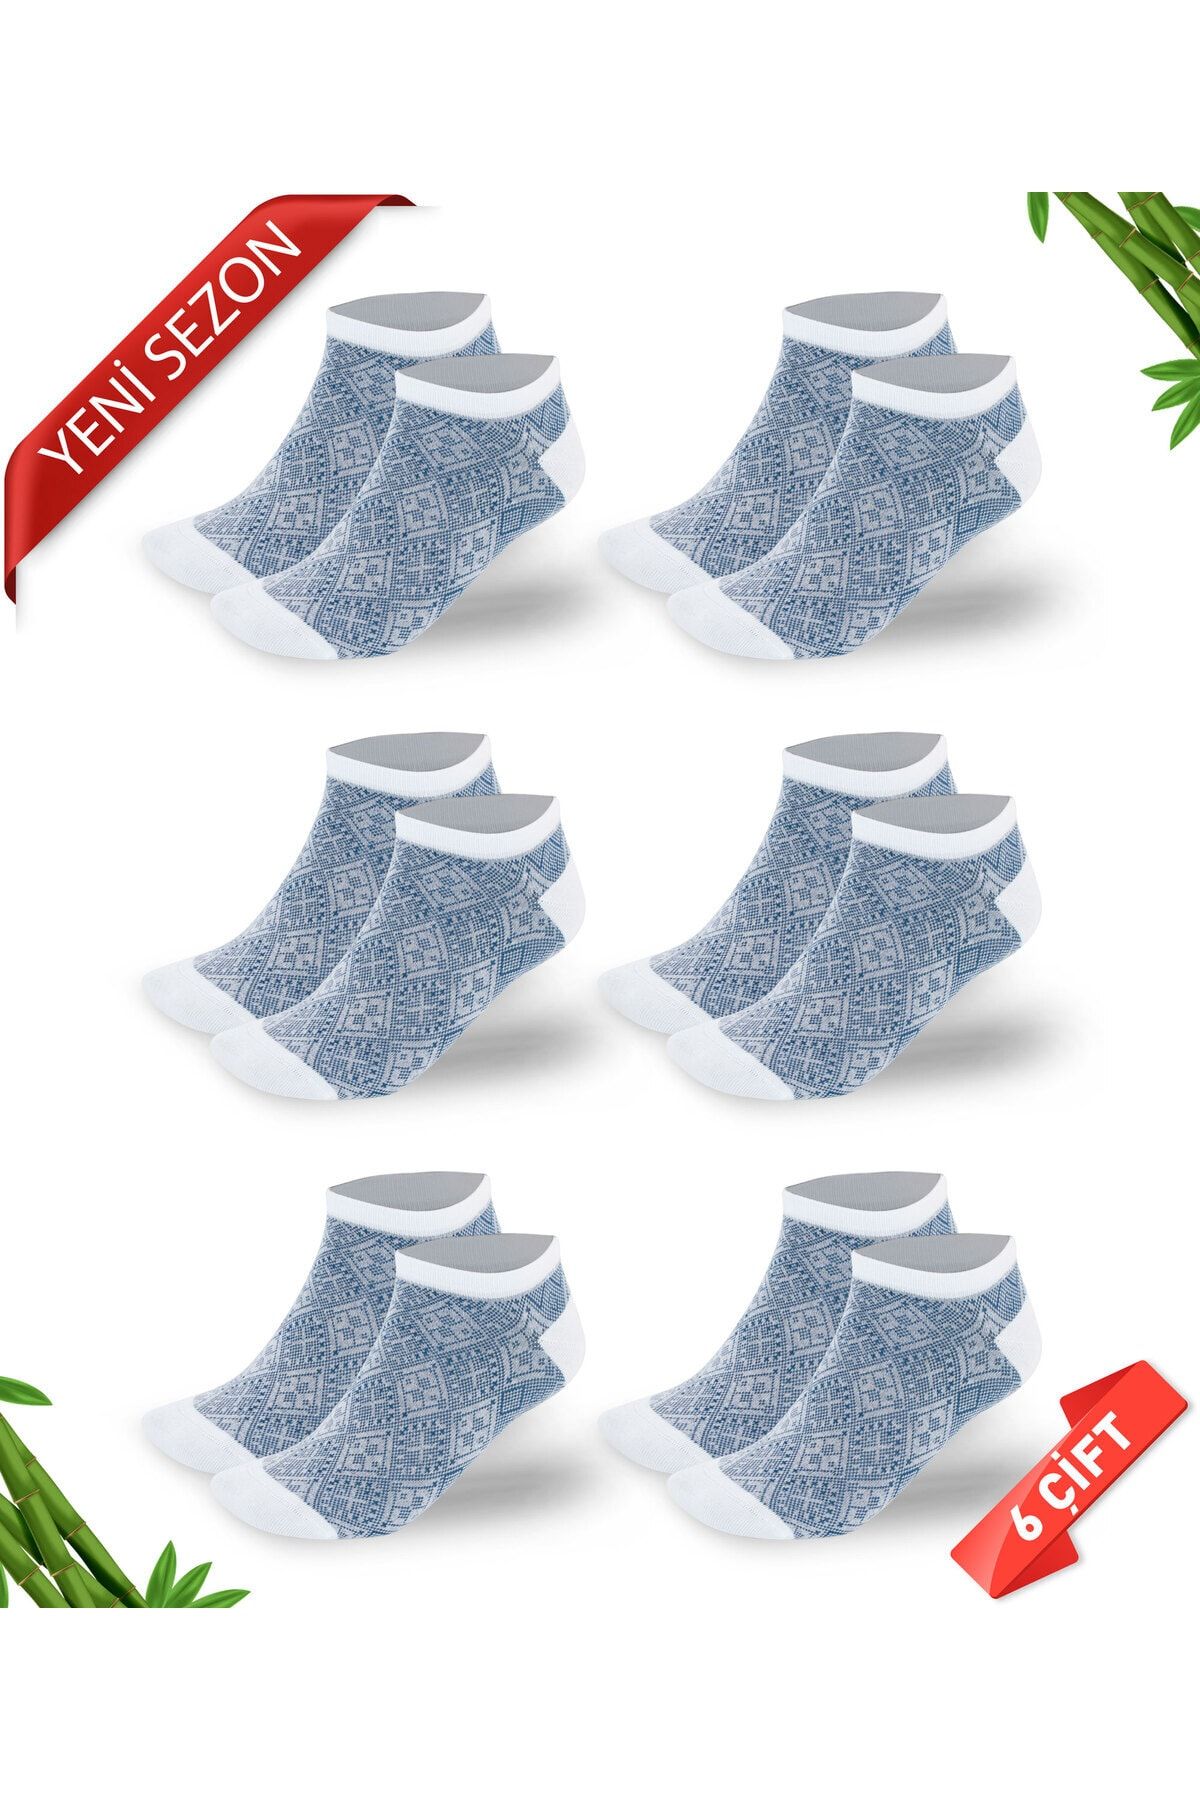 DAYCO Premium Mavi Retro Desenli Kadın Bambu Patik Çorap 6'lı Set - 10558-retro